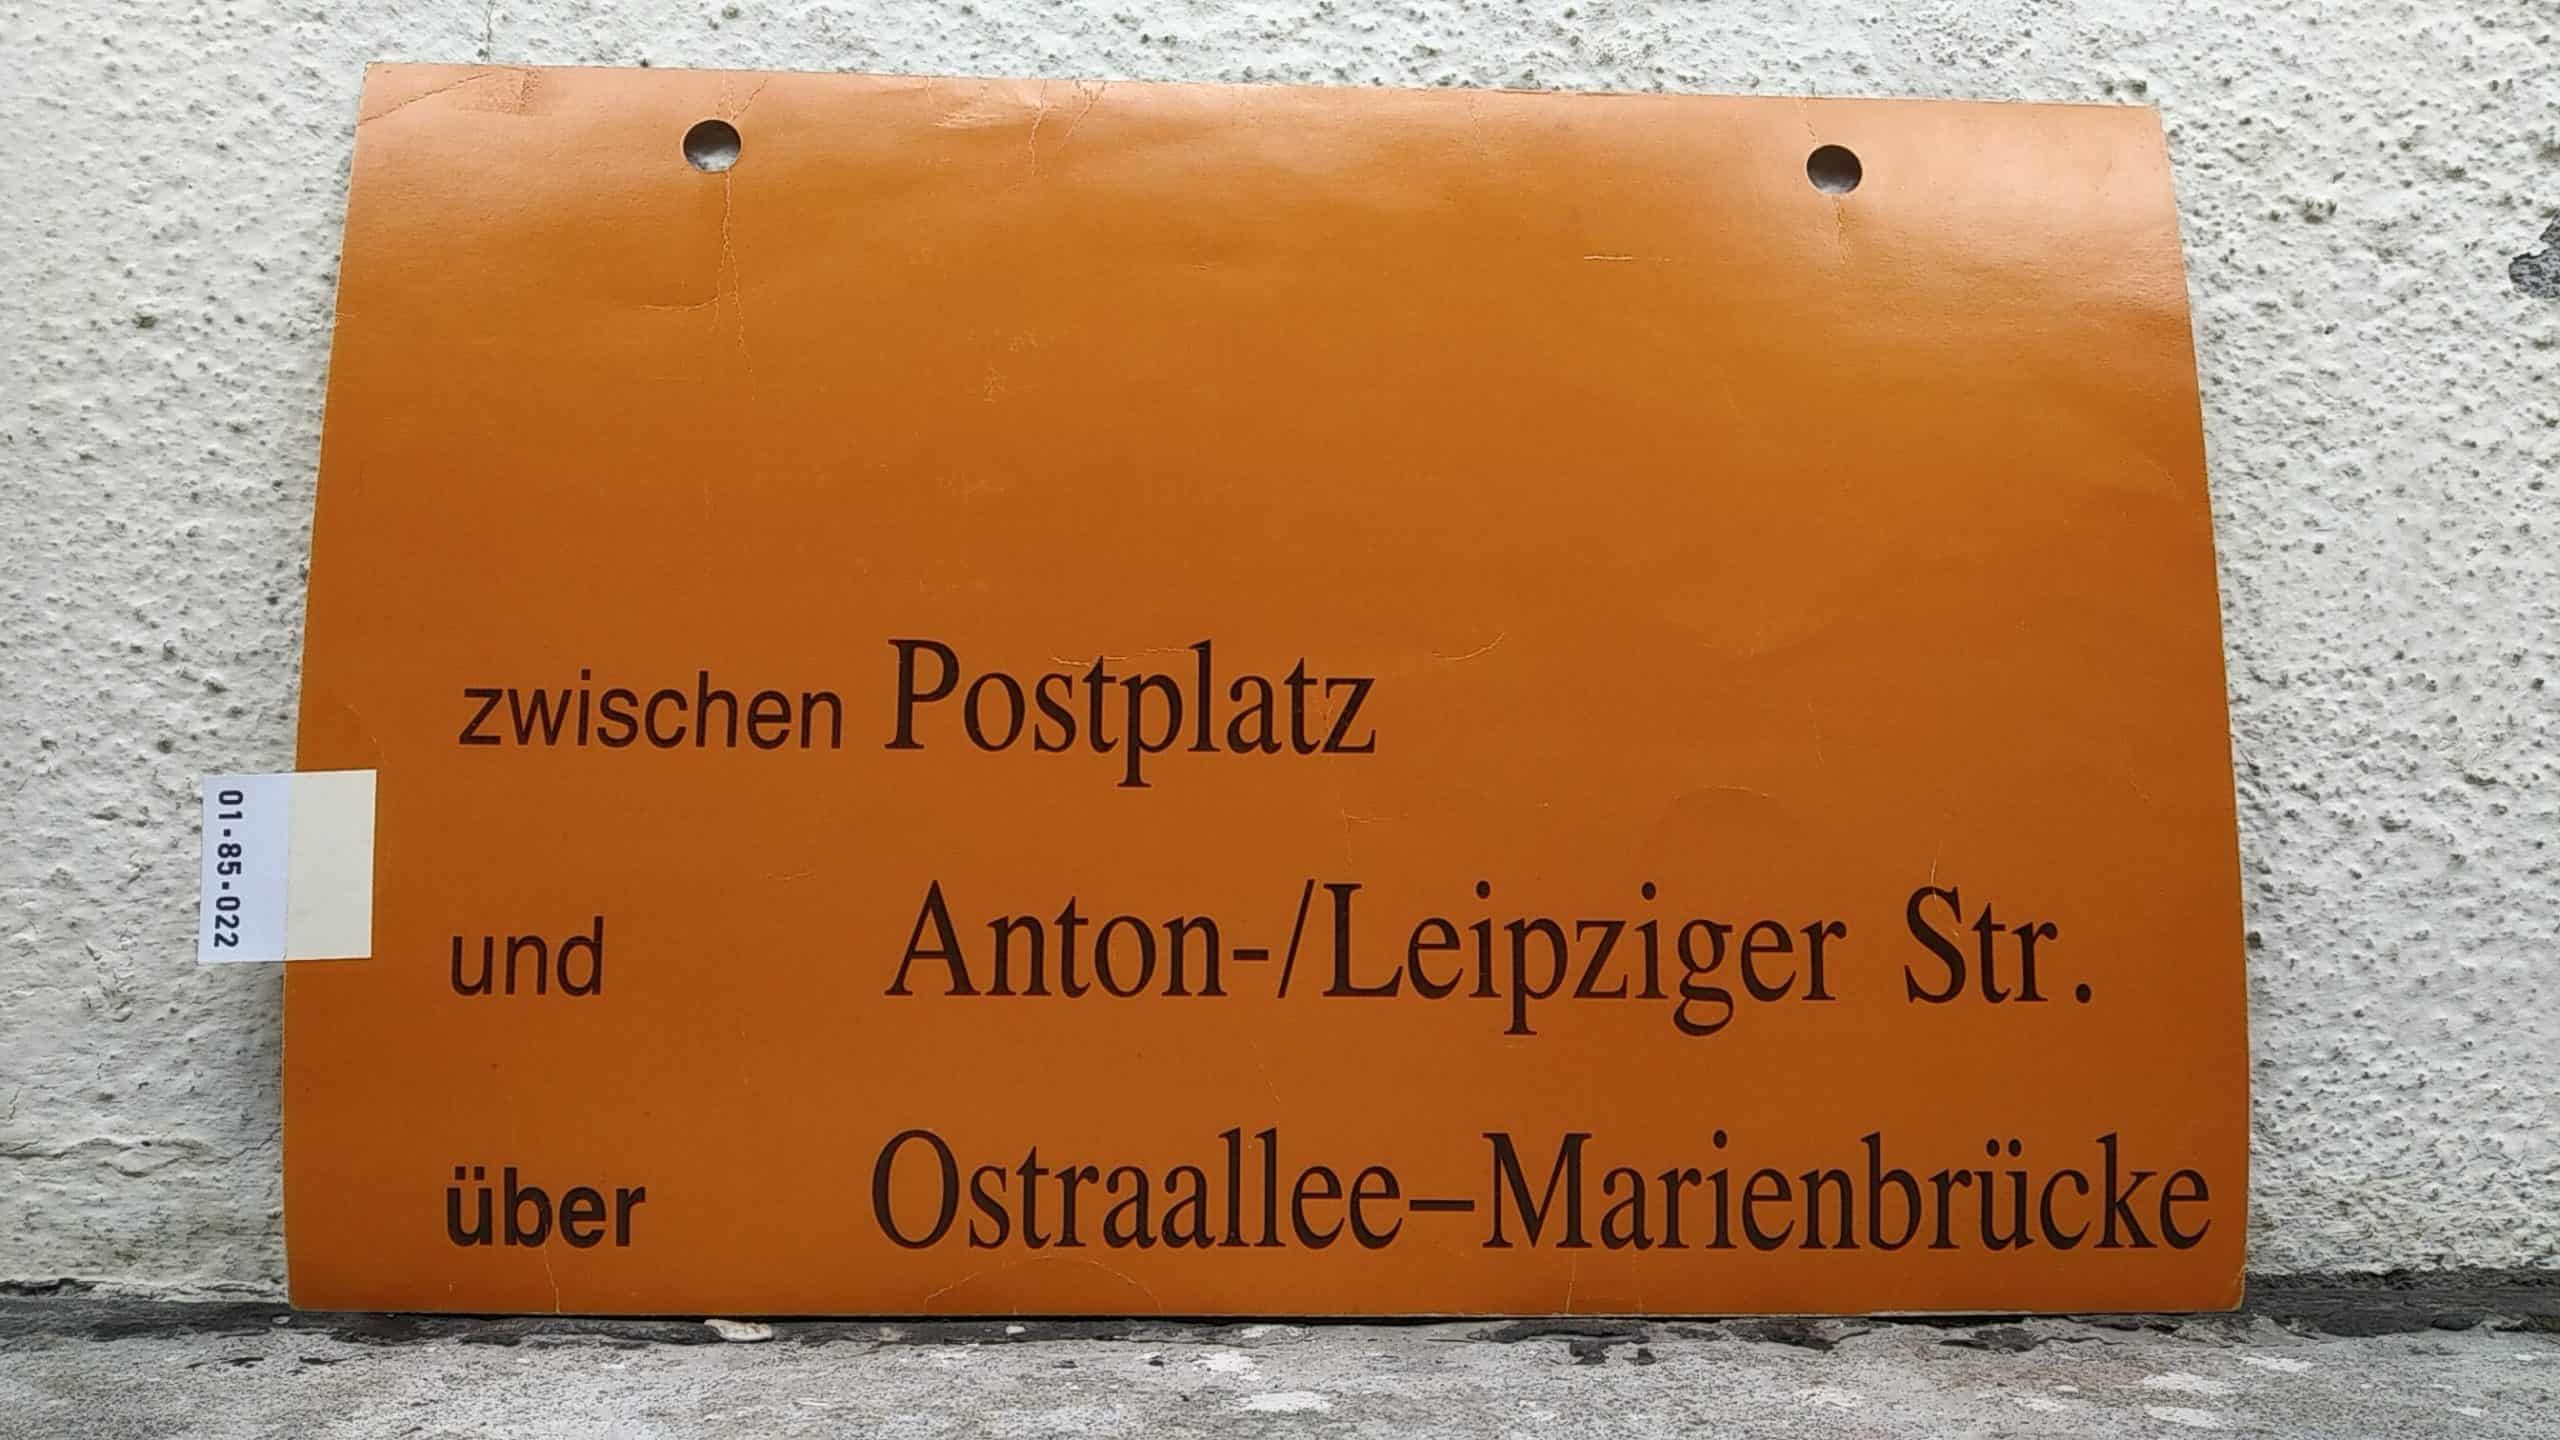 Ein seltenes Straßenbahn-Umleitungsschild aus Dresden: zwischen Postplatz und Anton-/Leipziger Str. über Ostraallee-Marienbrücke